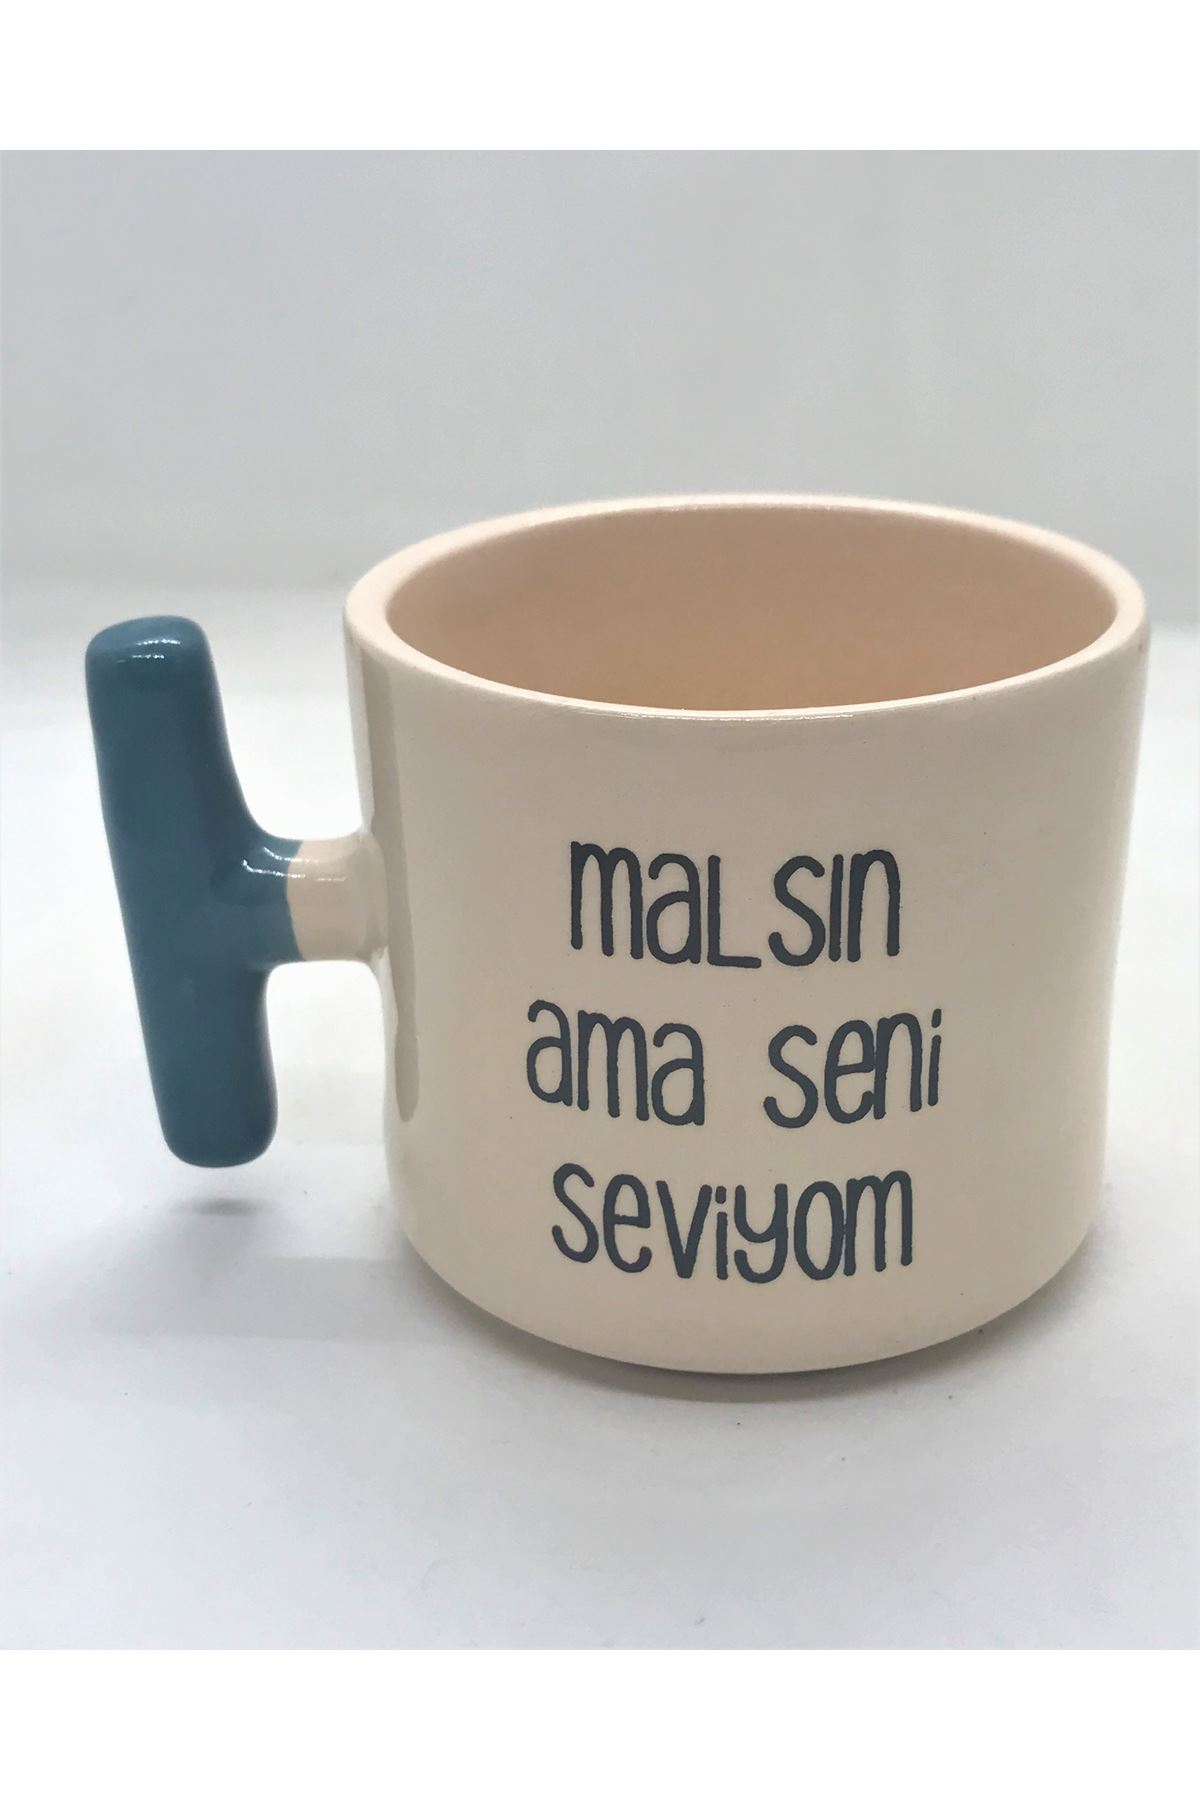 MALSIN AMA SENİ SEVİYORUM - T SERAMİK KUPA